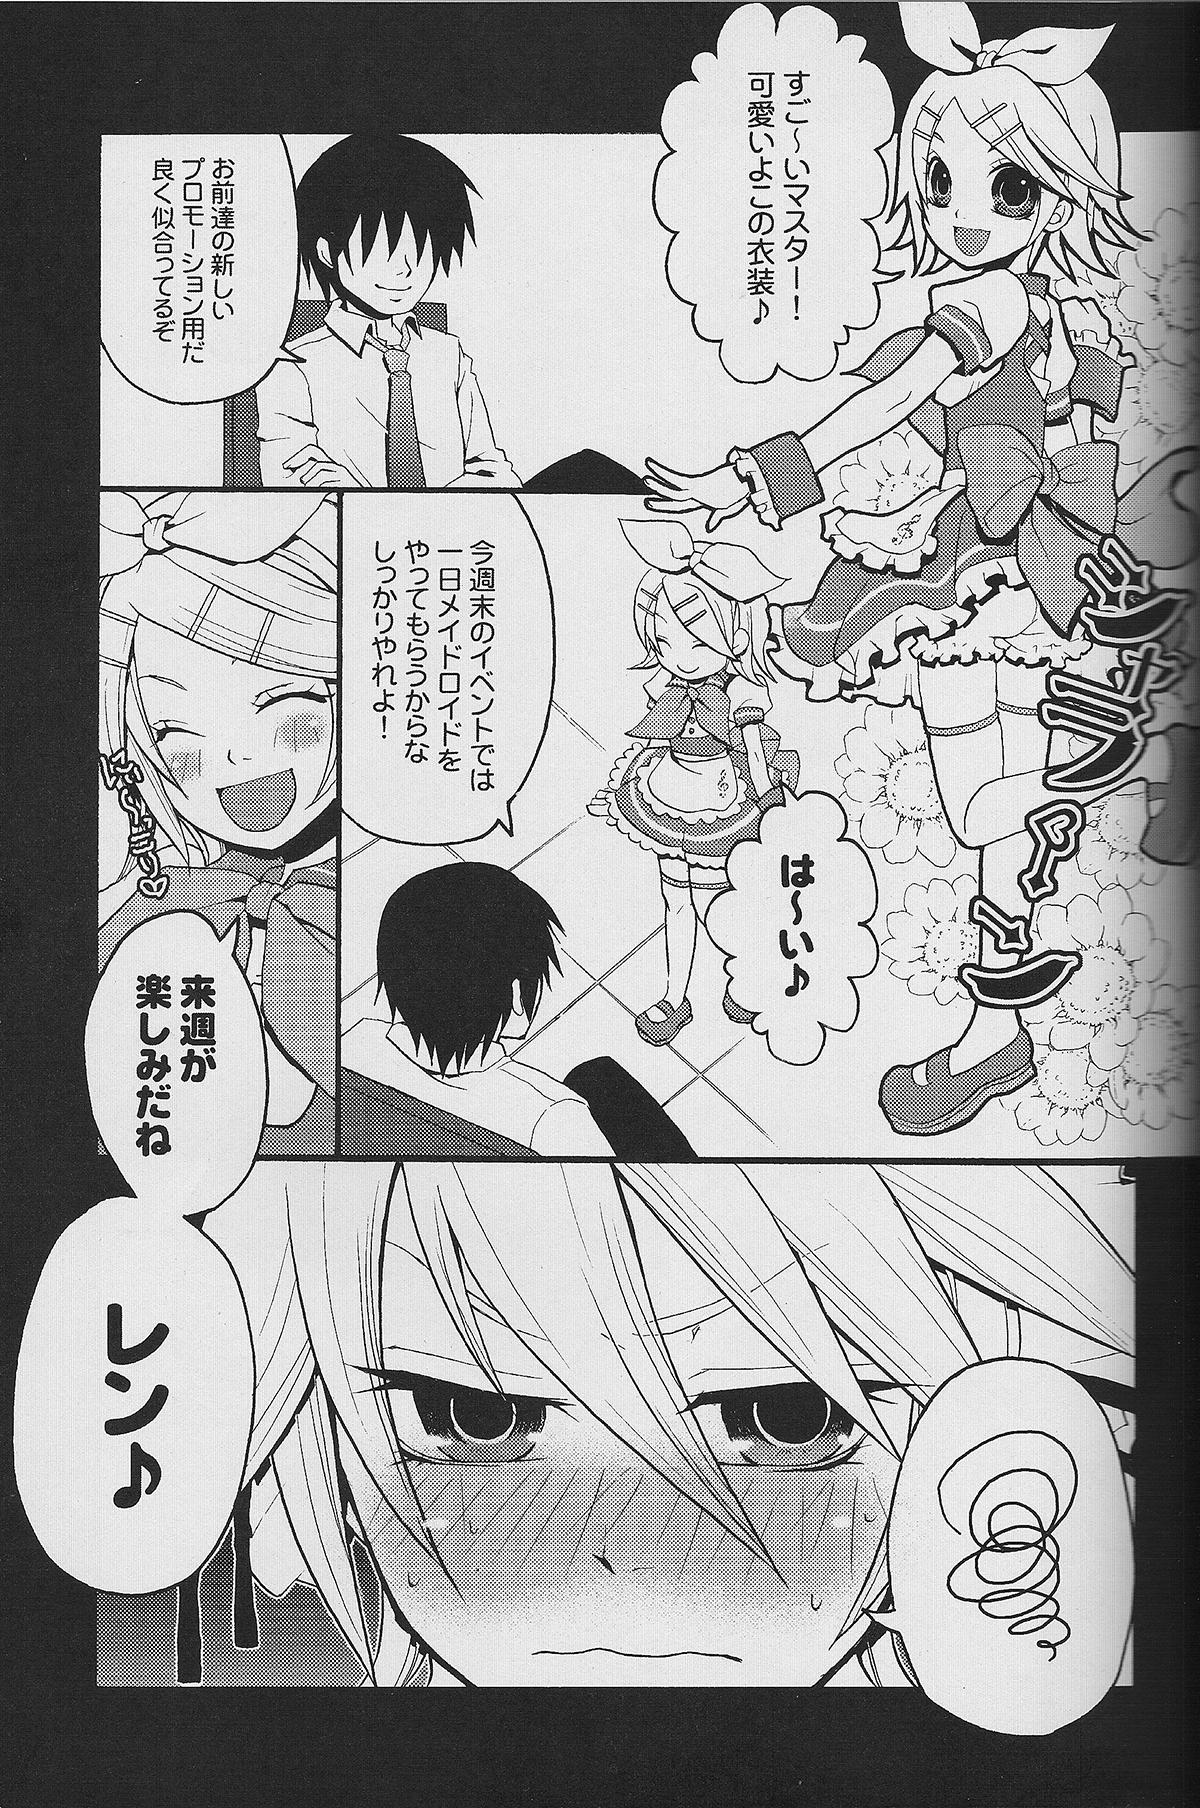 Cruising TsundeLen Cafe Betsubara! - Vocaloid For - Page 6